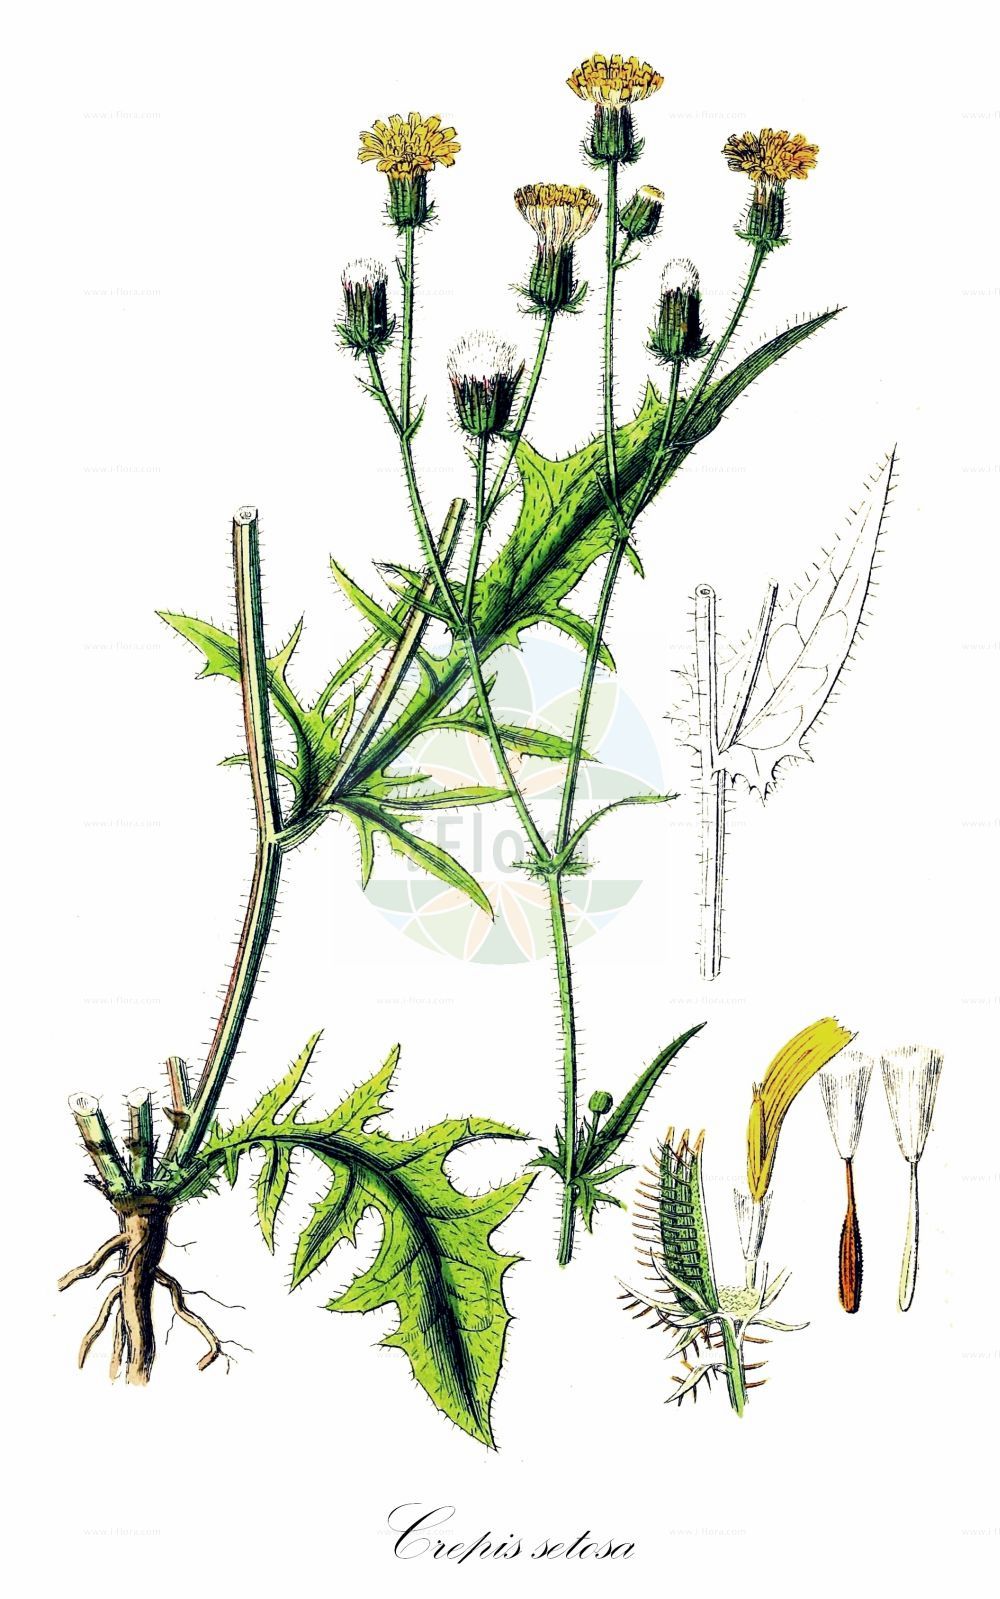 Historische Abbildung von Crepis setosa (Borsten-Pippau - Bristly Hawk's-beard). Das Bild zeigt Blatt, Bluete, Frucht und Same. ---- Historical Drawing of Crepis setosa (Borsten-Pippau - Bristly Hawk's-beard). The image is showing leaf, flower, fruit and seed.(Crepis setosa,Borsten-Pippau,Bristly Hawk's-beard,Barkhausia hispida,Barkhausia setosa,Crepis hispida,Crepis setosa,Borsten-Pippau,Bristly Hawk's-beard,Crepis,Pippau,Hawk's-beard,Asteraceae,Korbblütengewächse,Daisy family,Blatt,Bluete,Frucht,Same,leaf,flower,fruit,seed,Sowerby (1790-1813))